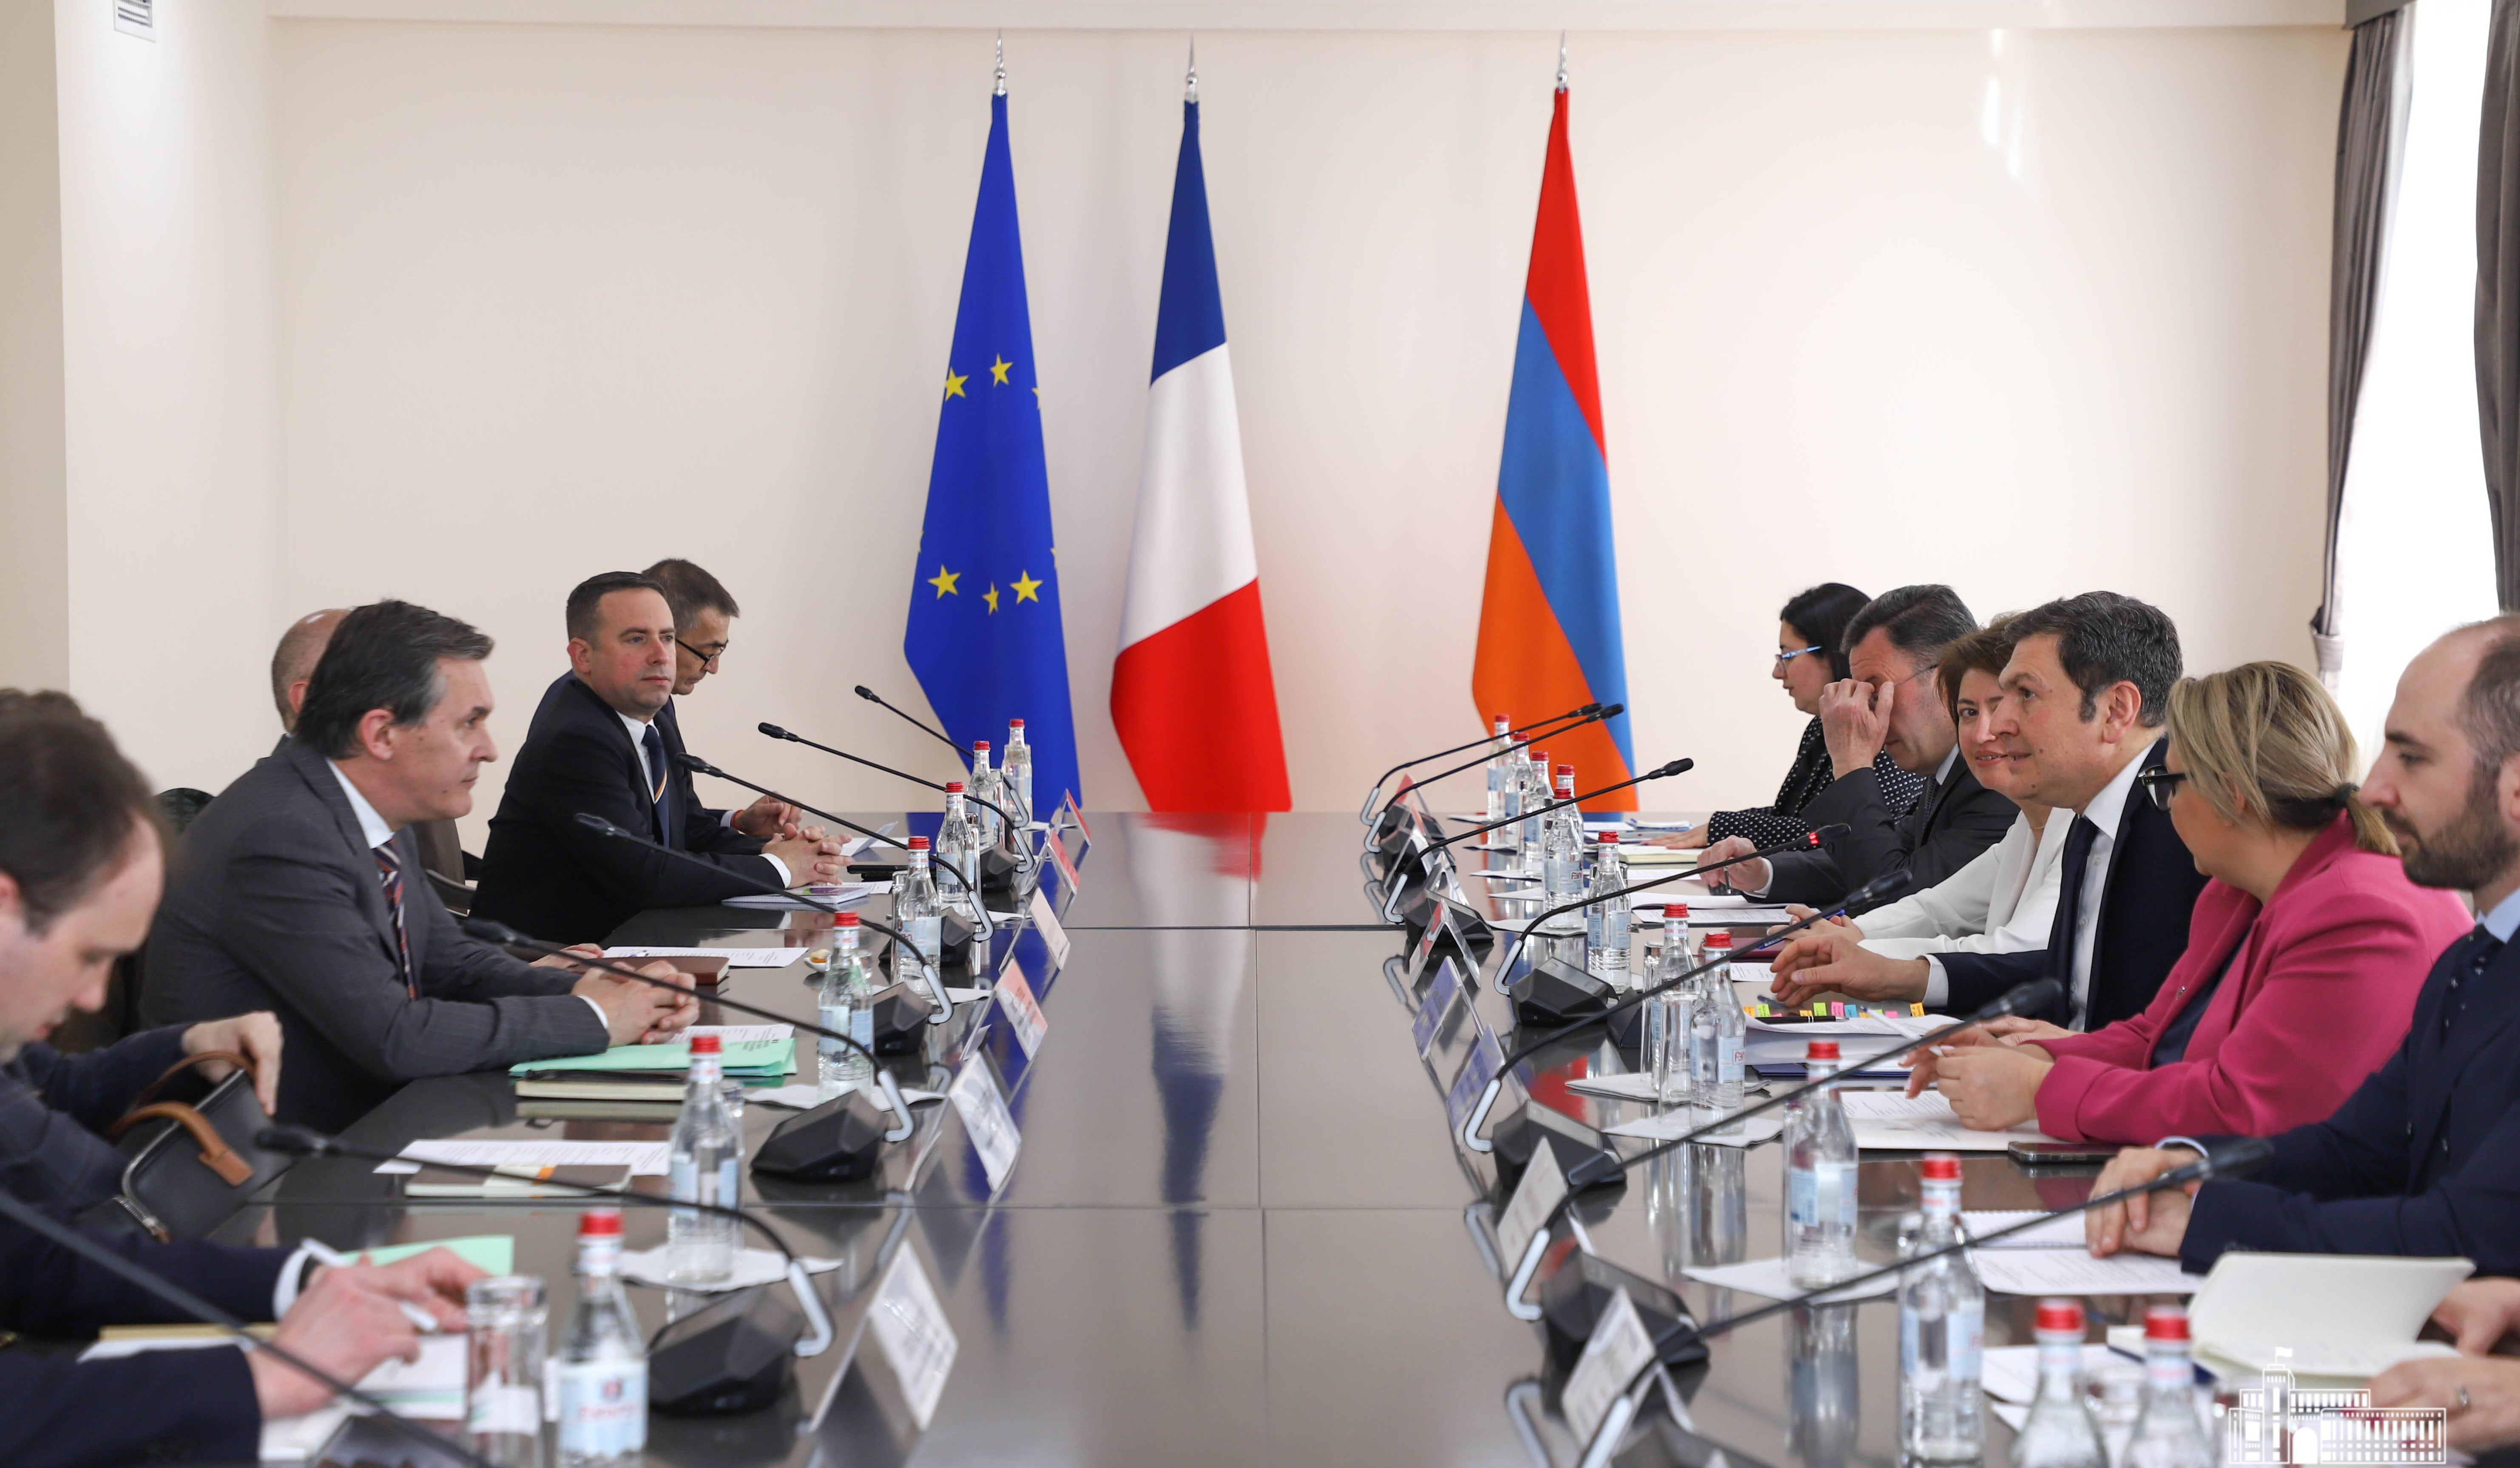 Հայաստանի և Ֆրանսիայի ԱԳՆ-ների միջև տեղի են ունեցել քաղաքական խորհրդակցություններ